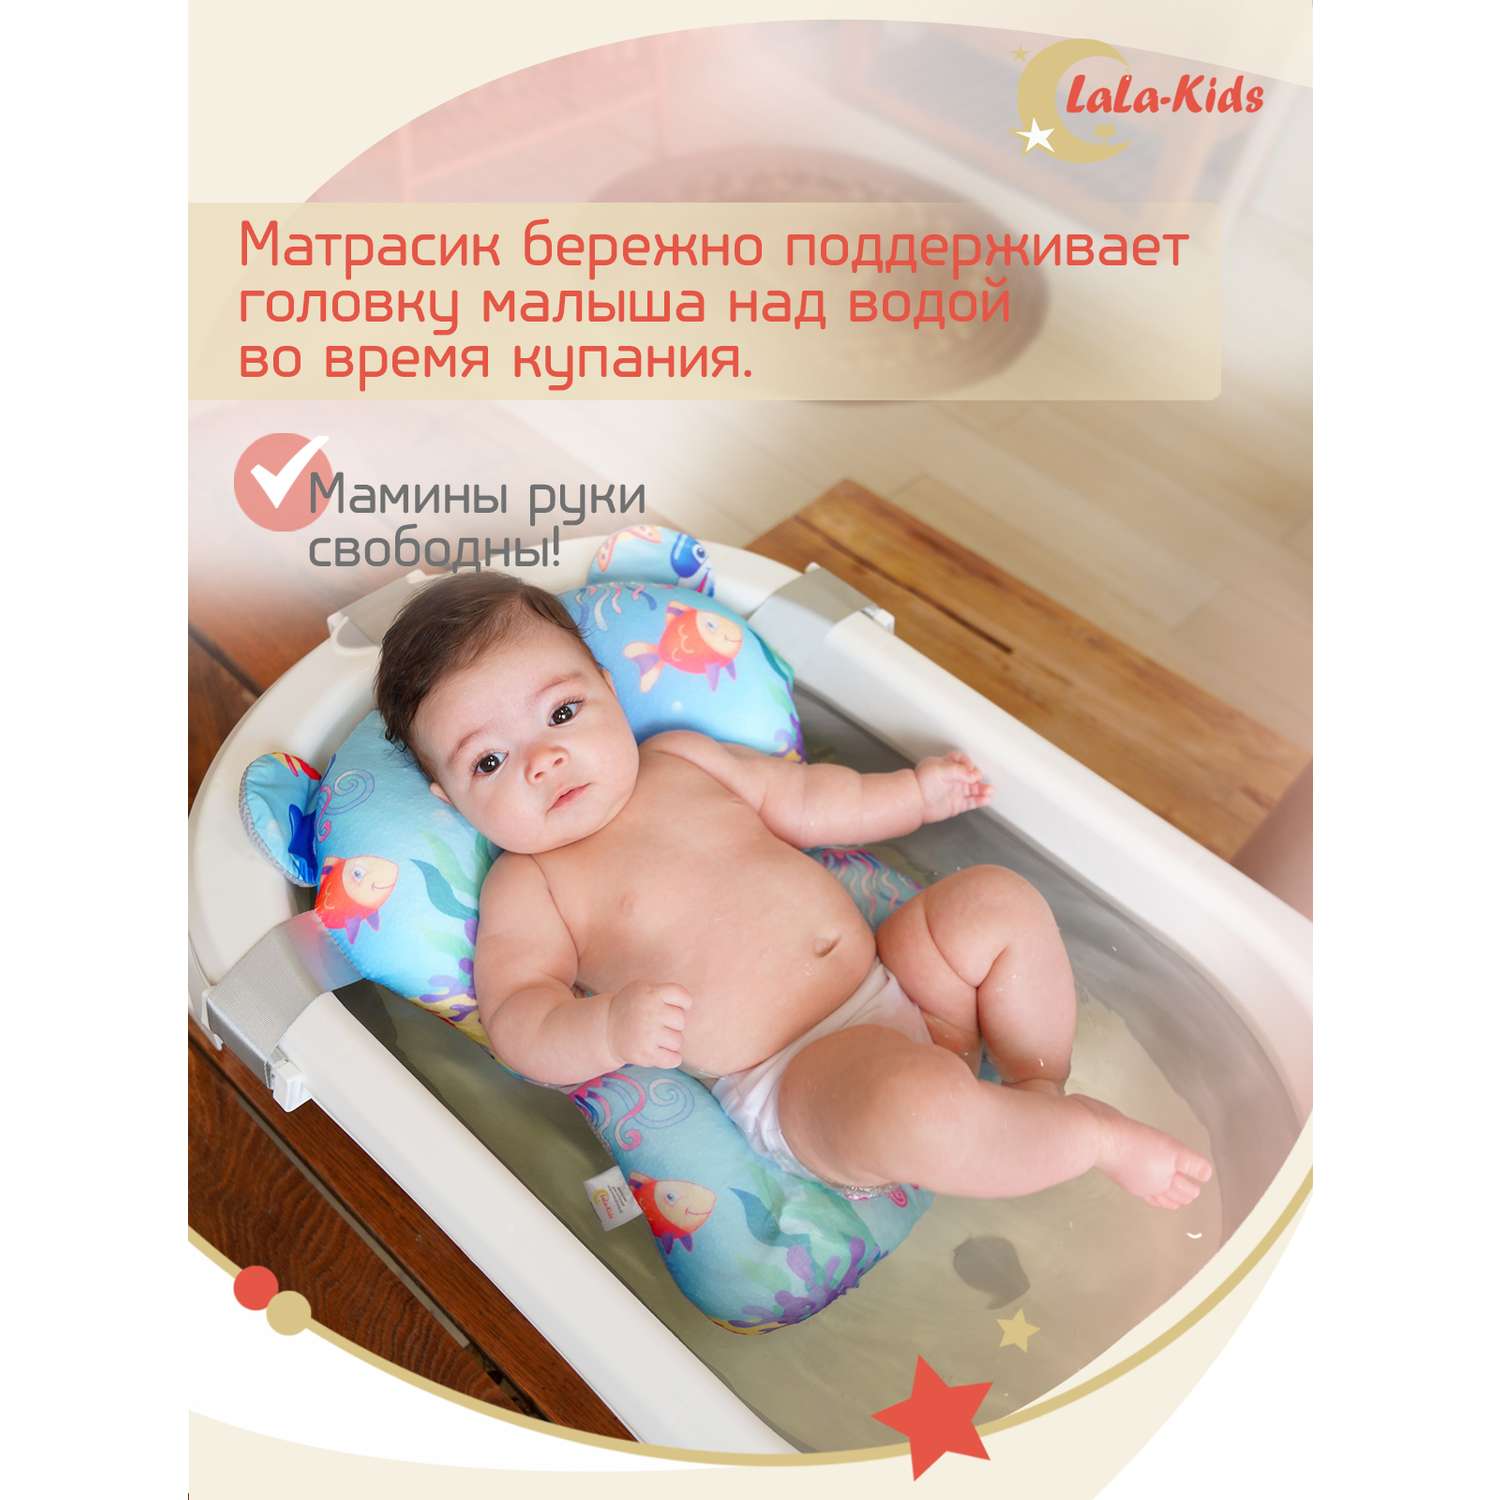 Детская ванночка LaLa-Kids складная для купания новорожденных с термометром и матрасиком в комплекте - фото 11